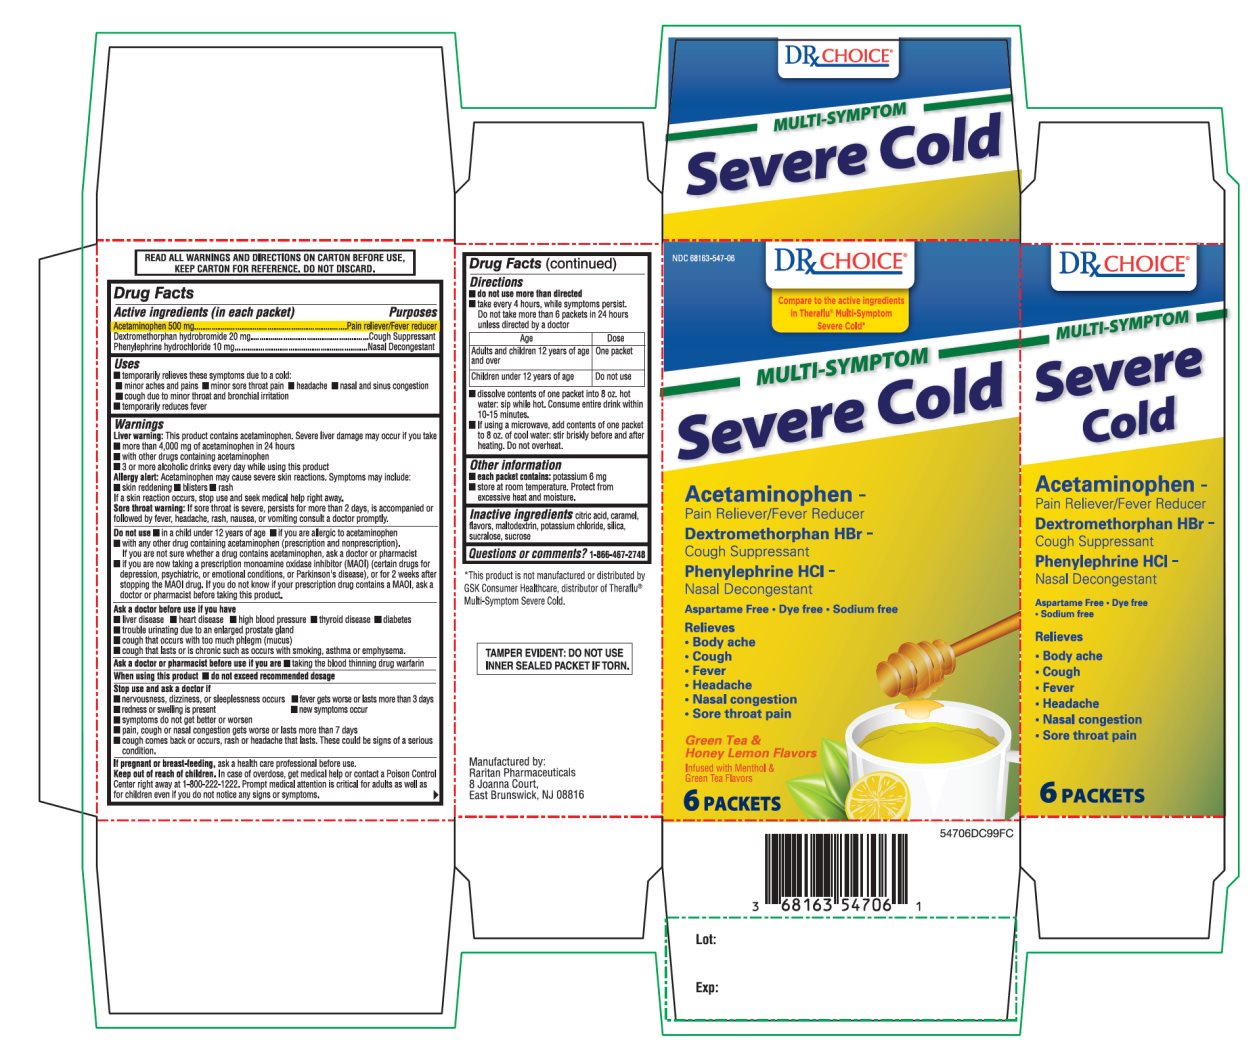 DRX Choice Multi Symptom Severe Cold